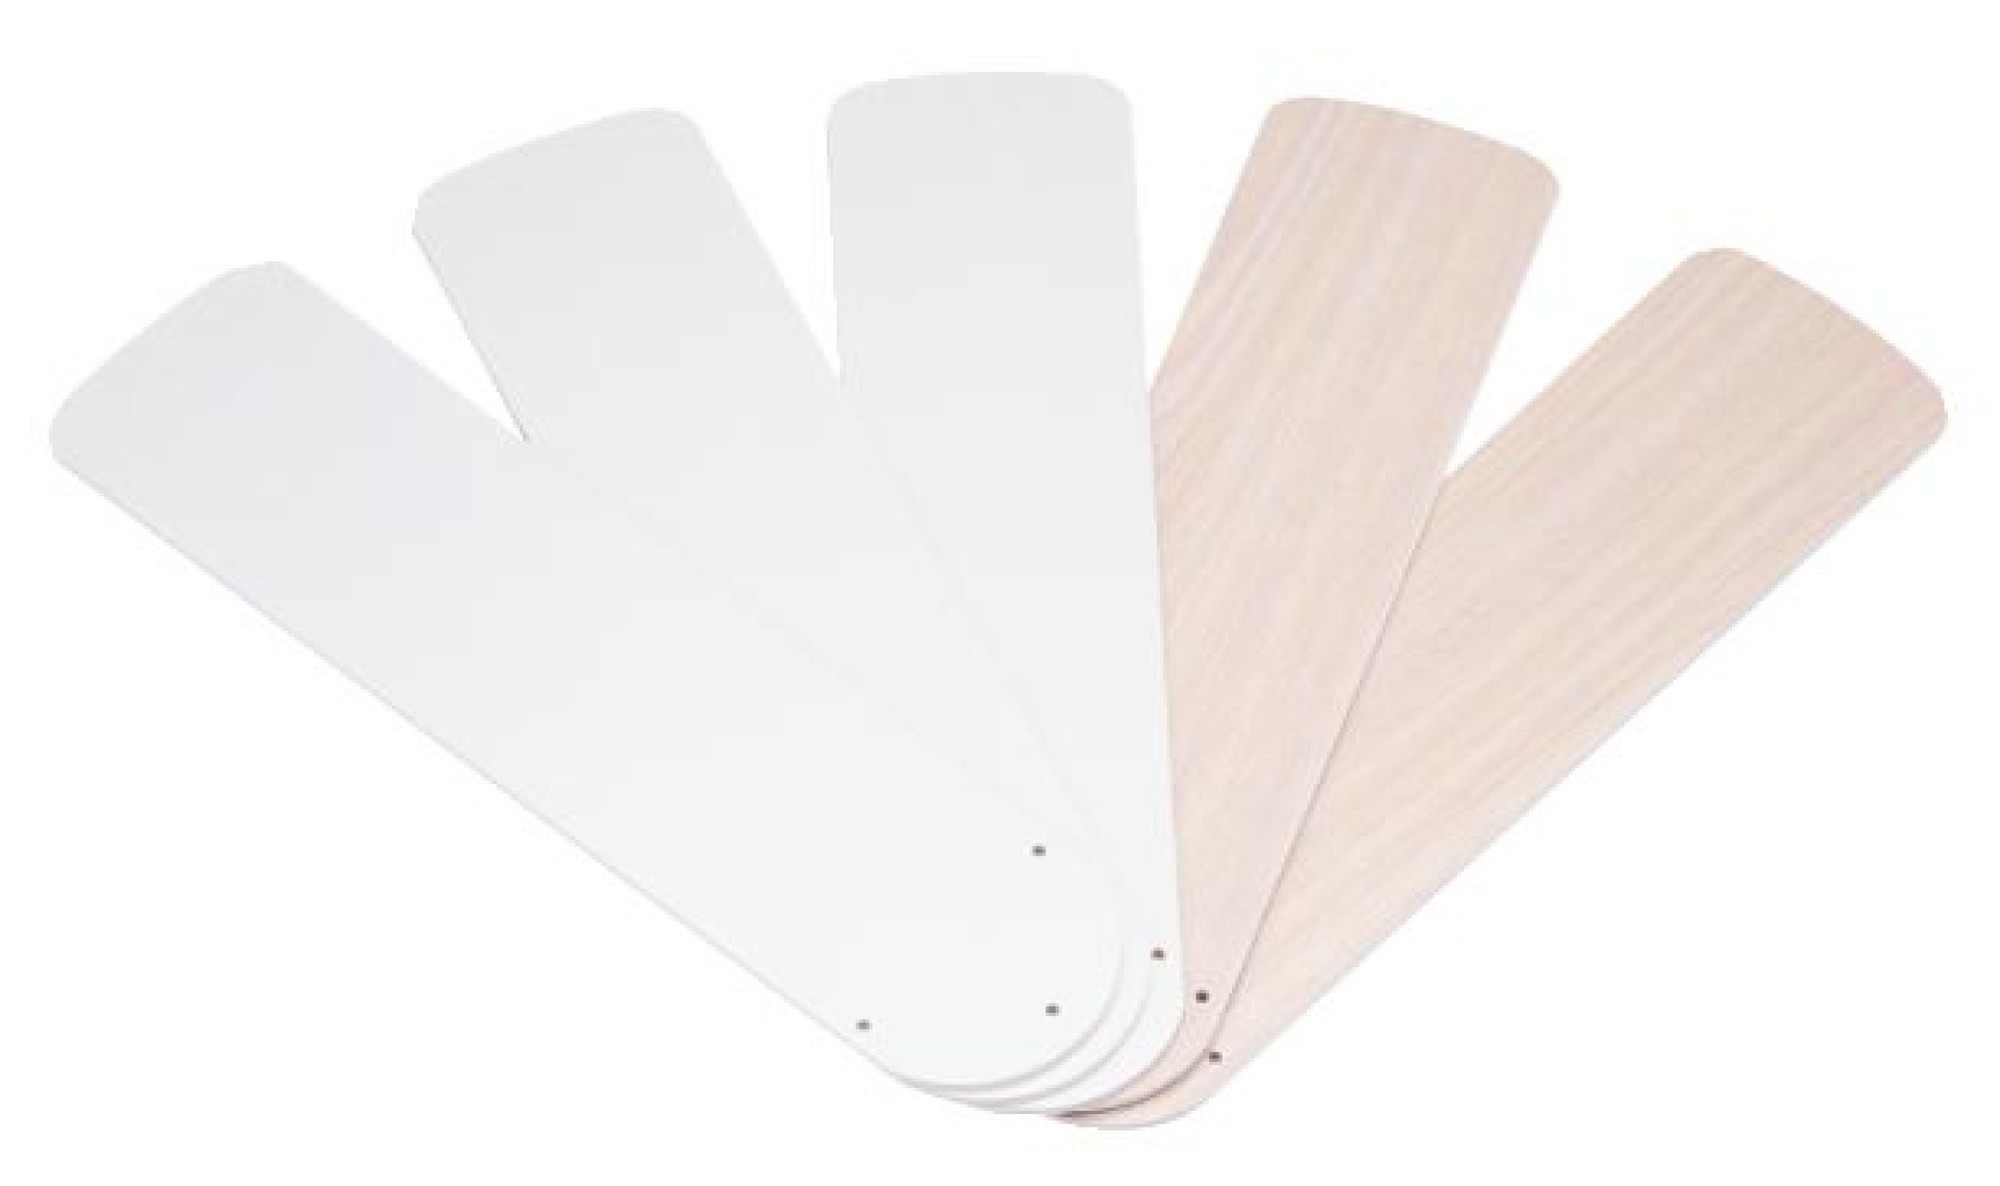 52" White/Bleached Oak Reversible Fan Blades